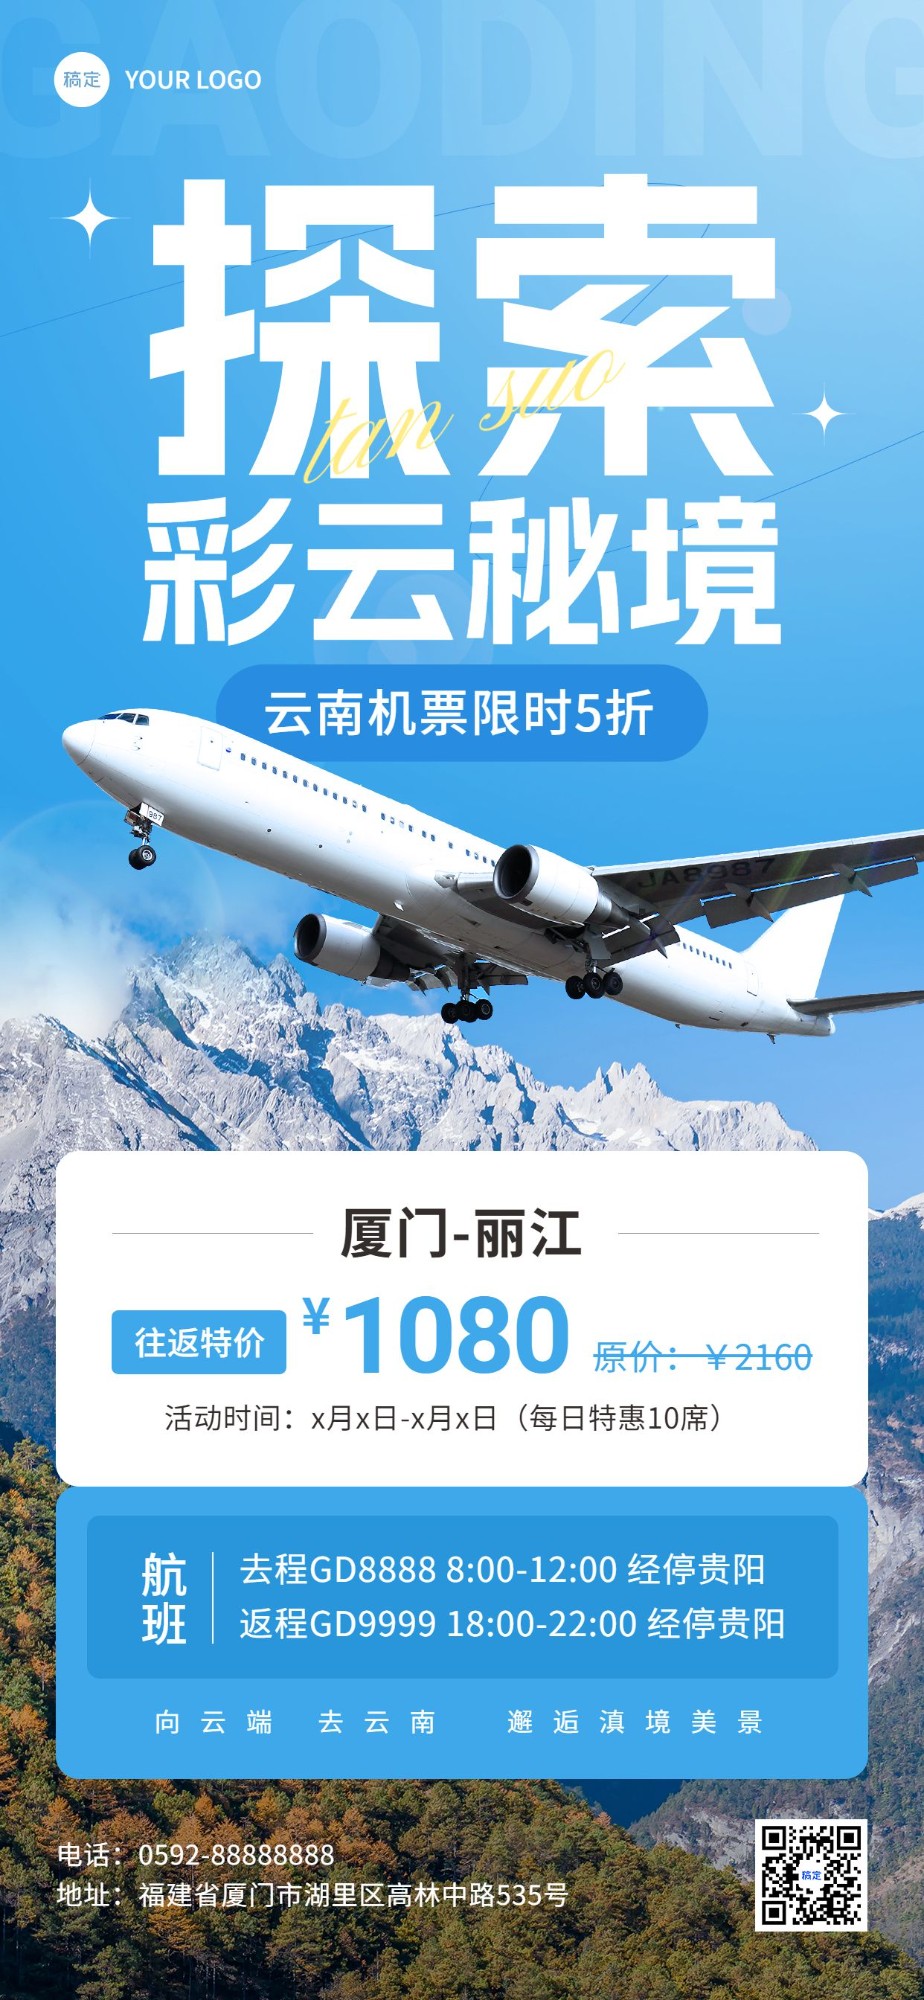 春季旅游出行云南丽江旅游机票促销全屏竖版海报预览效果